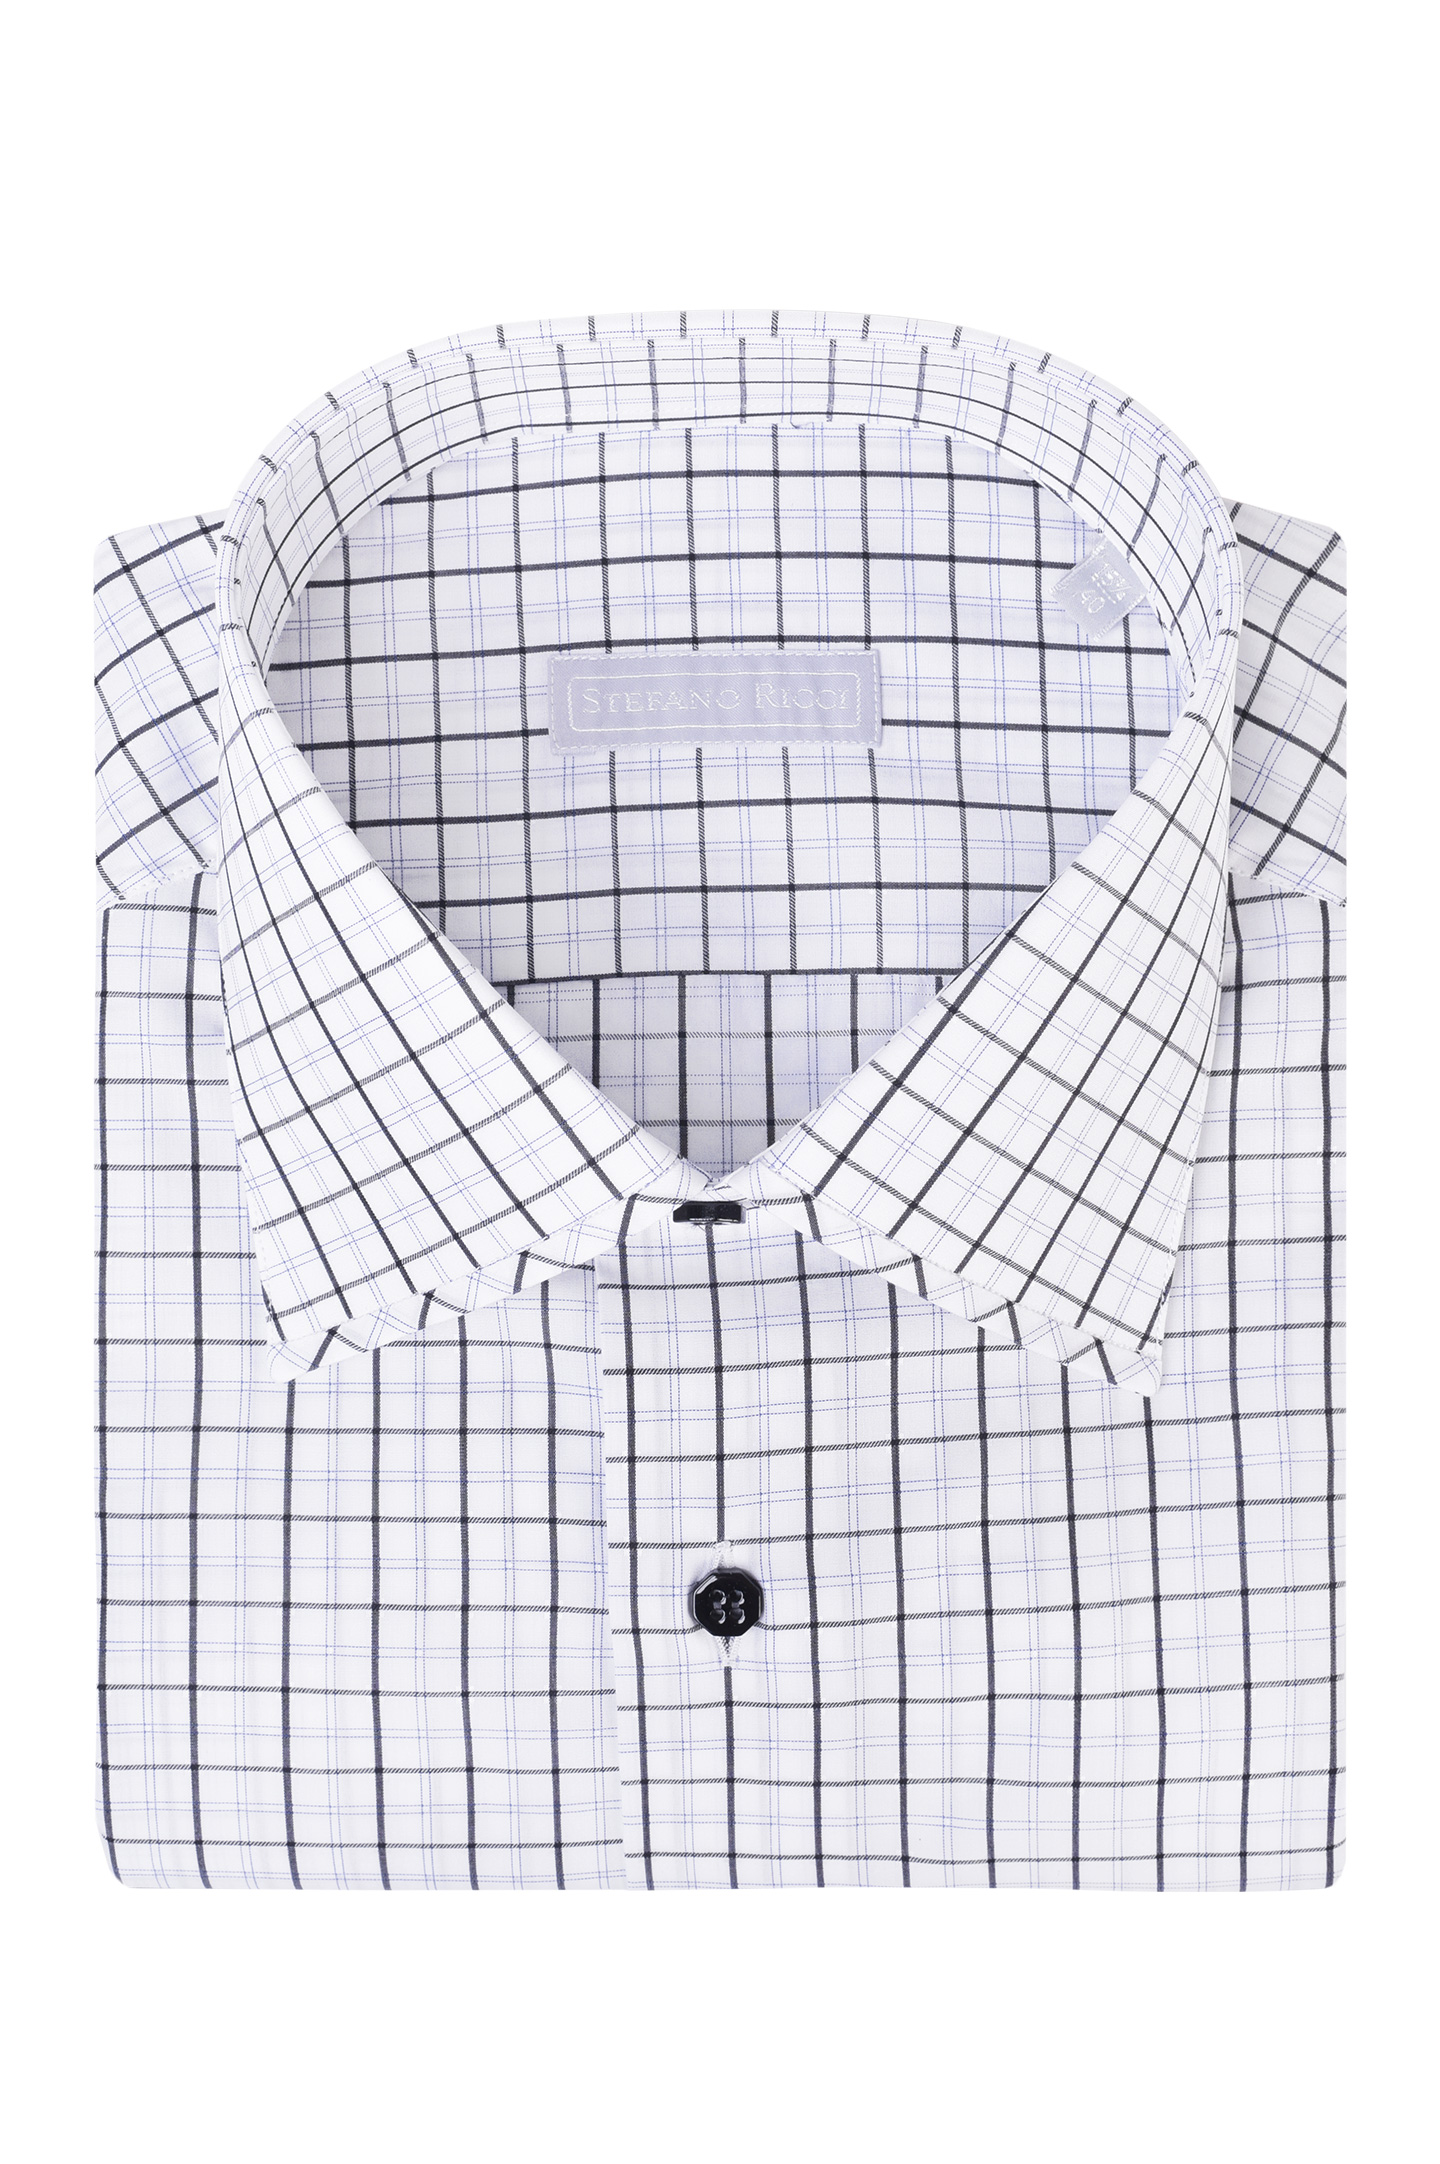 Рубашка STEFANO RICCI MC005375 R1977, цвет: Черно-белый, Мужской